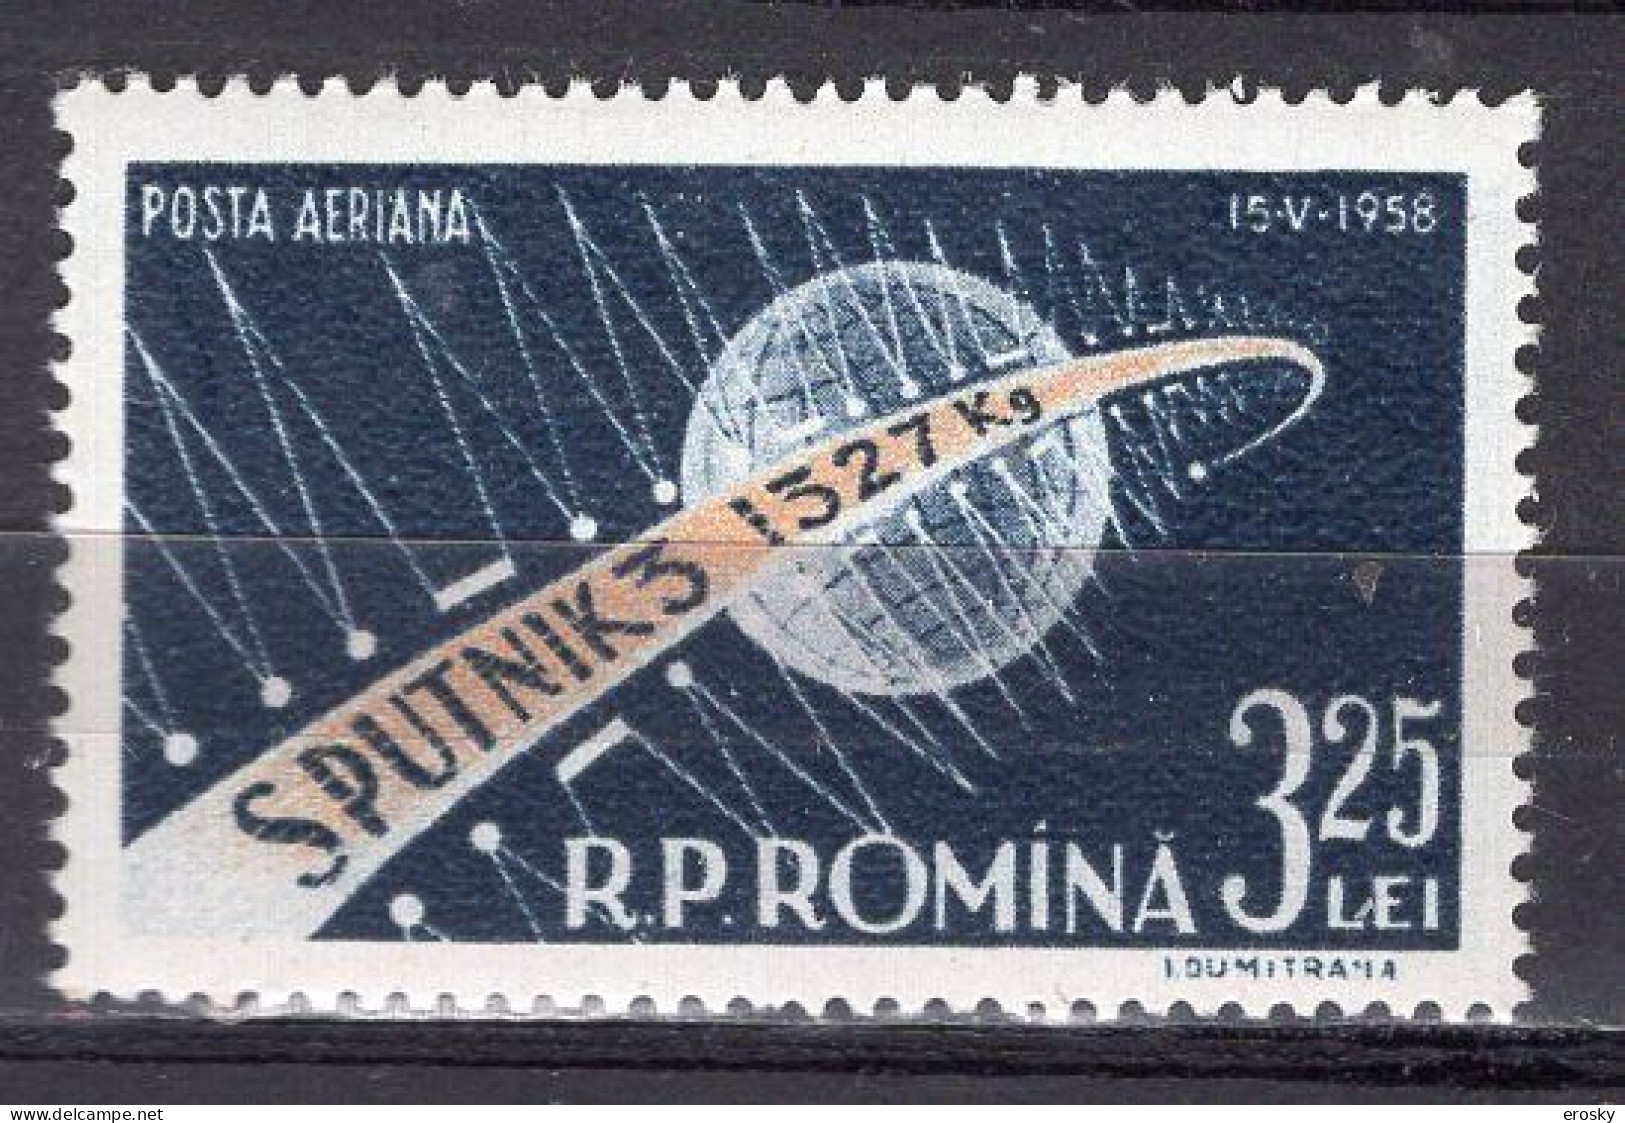 S2505 - ROMANIA ROUMANIE AERIENNE Yv N°87 ** ESPACE SPACE - Nuevos